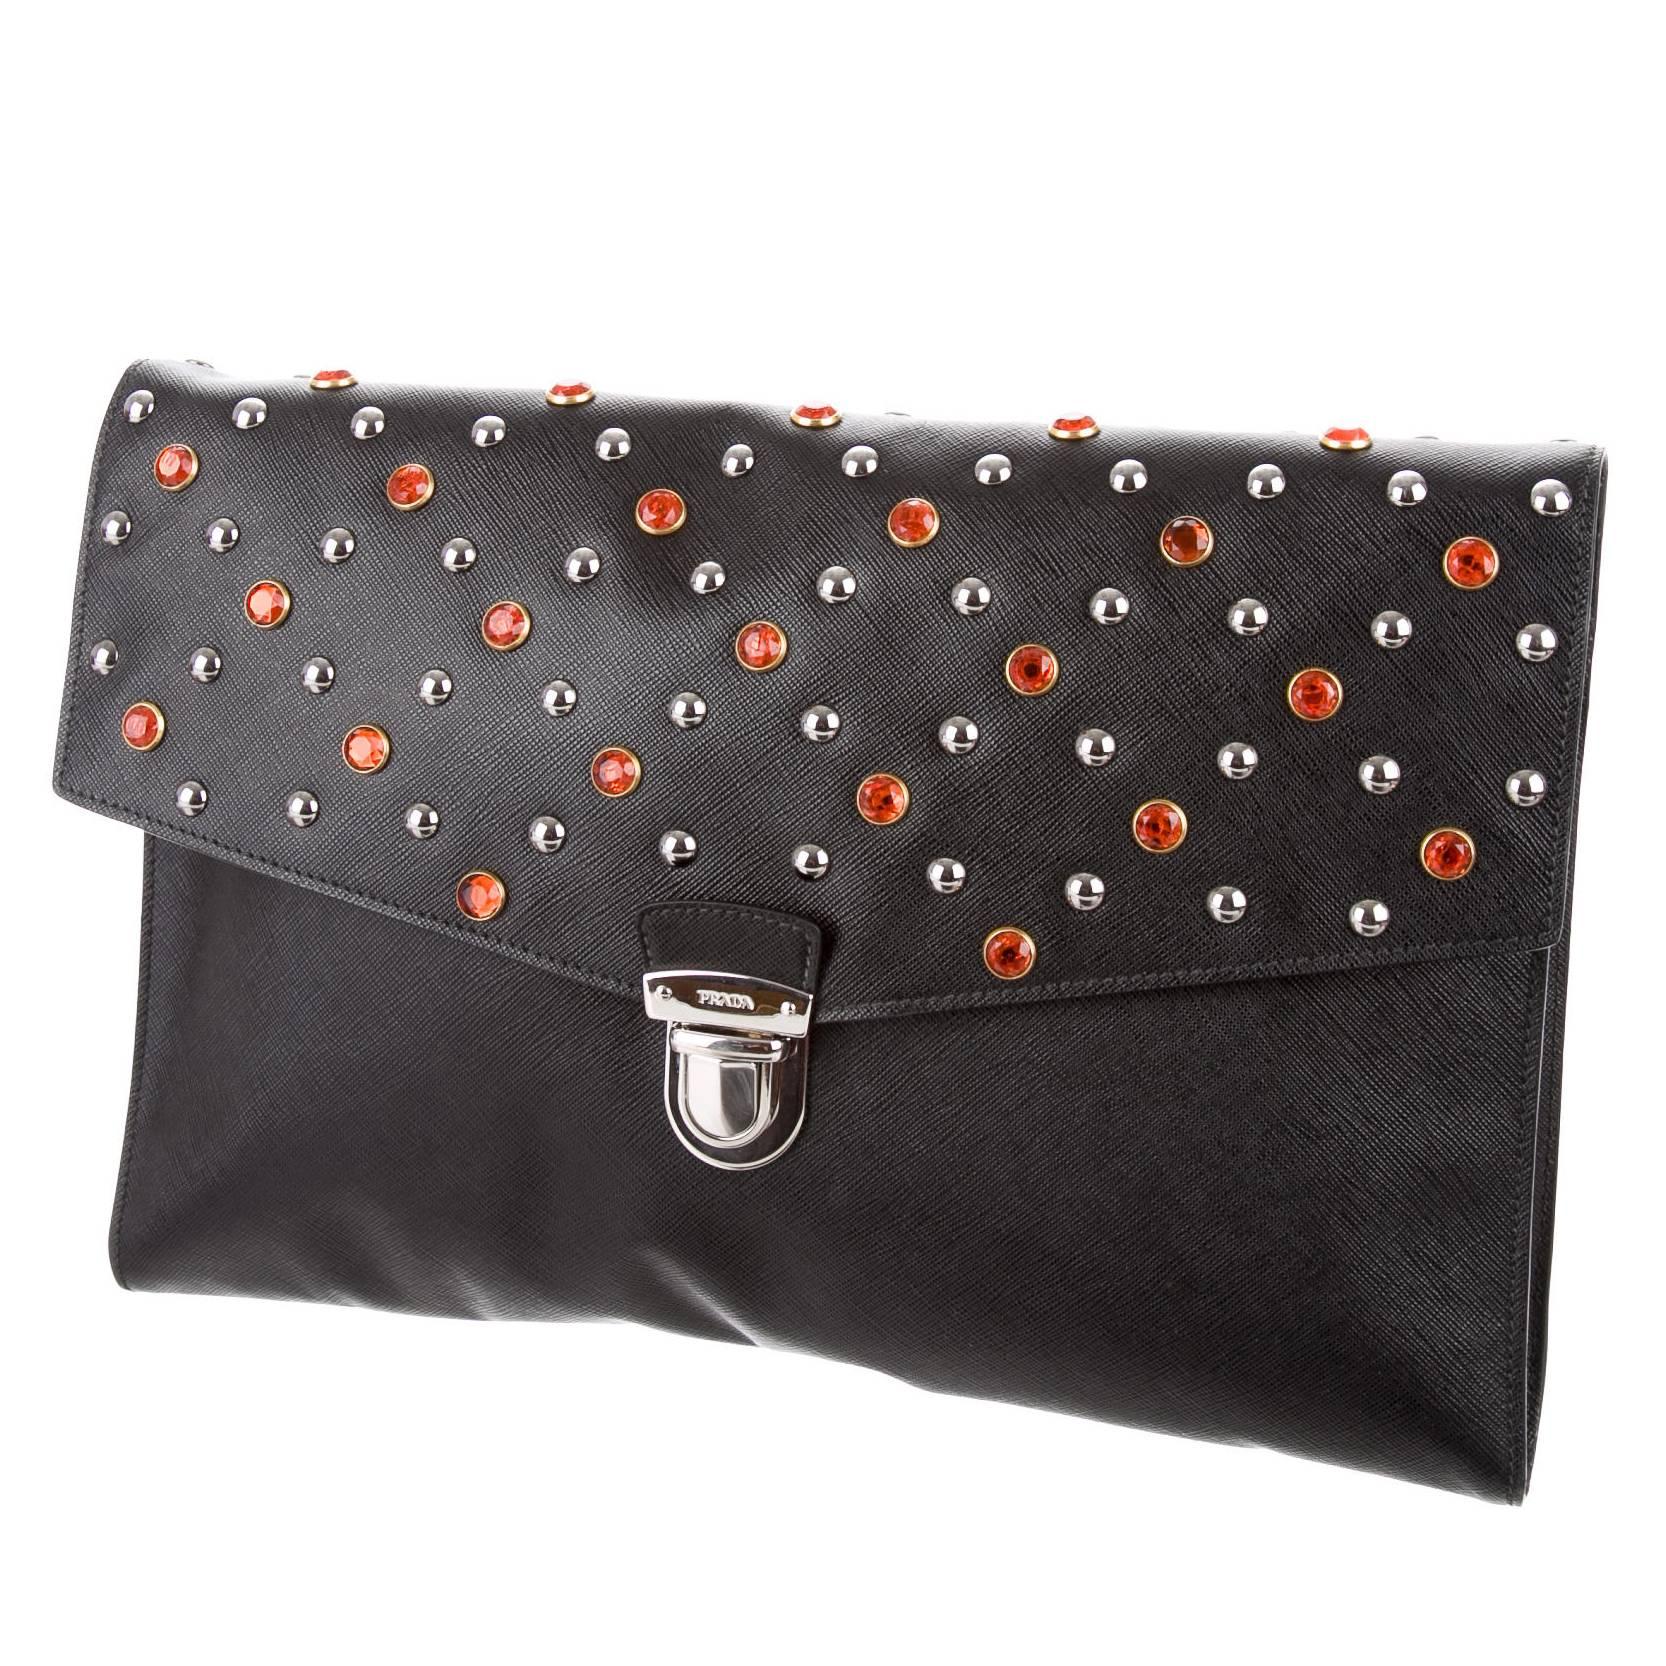 Prada Black Leather Red Crystal Silver Embellished Envelope Flap Clutch Bag